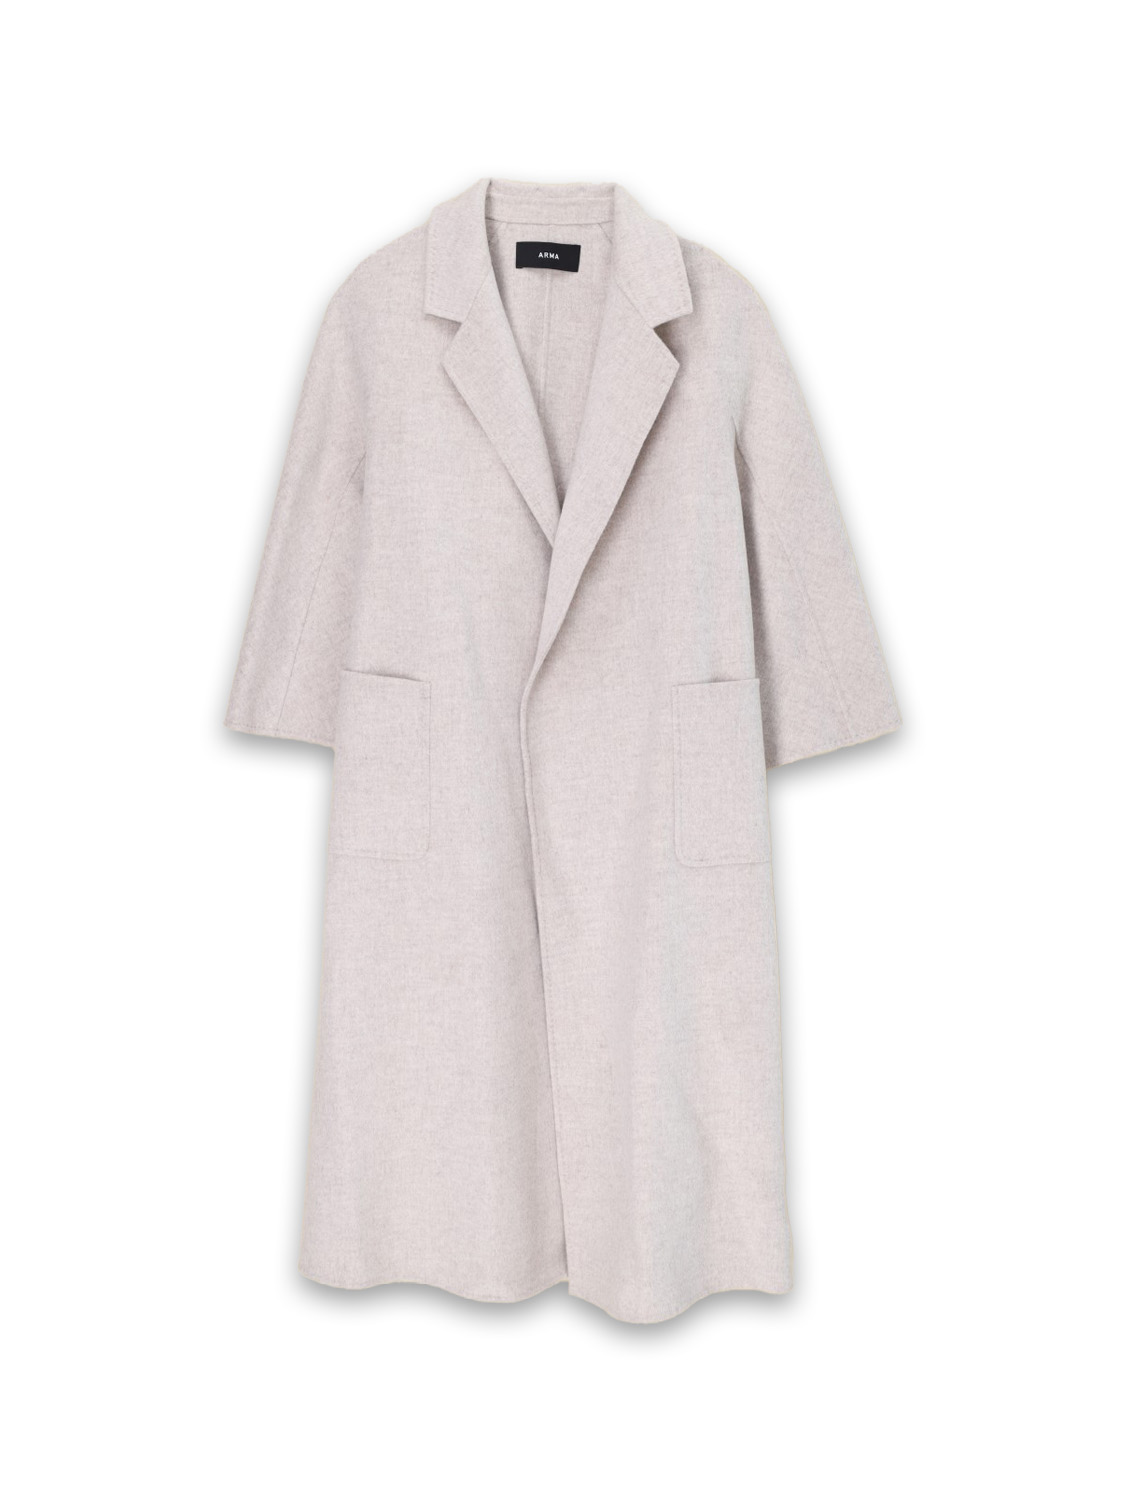 Arma Seguret - Oversized wool coat with tie ribbon  beige 34